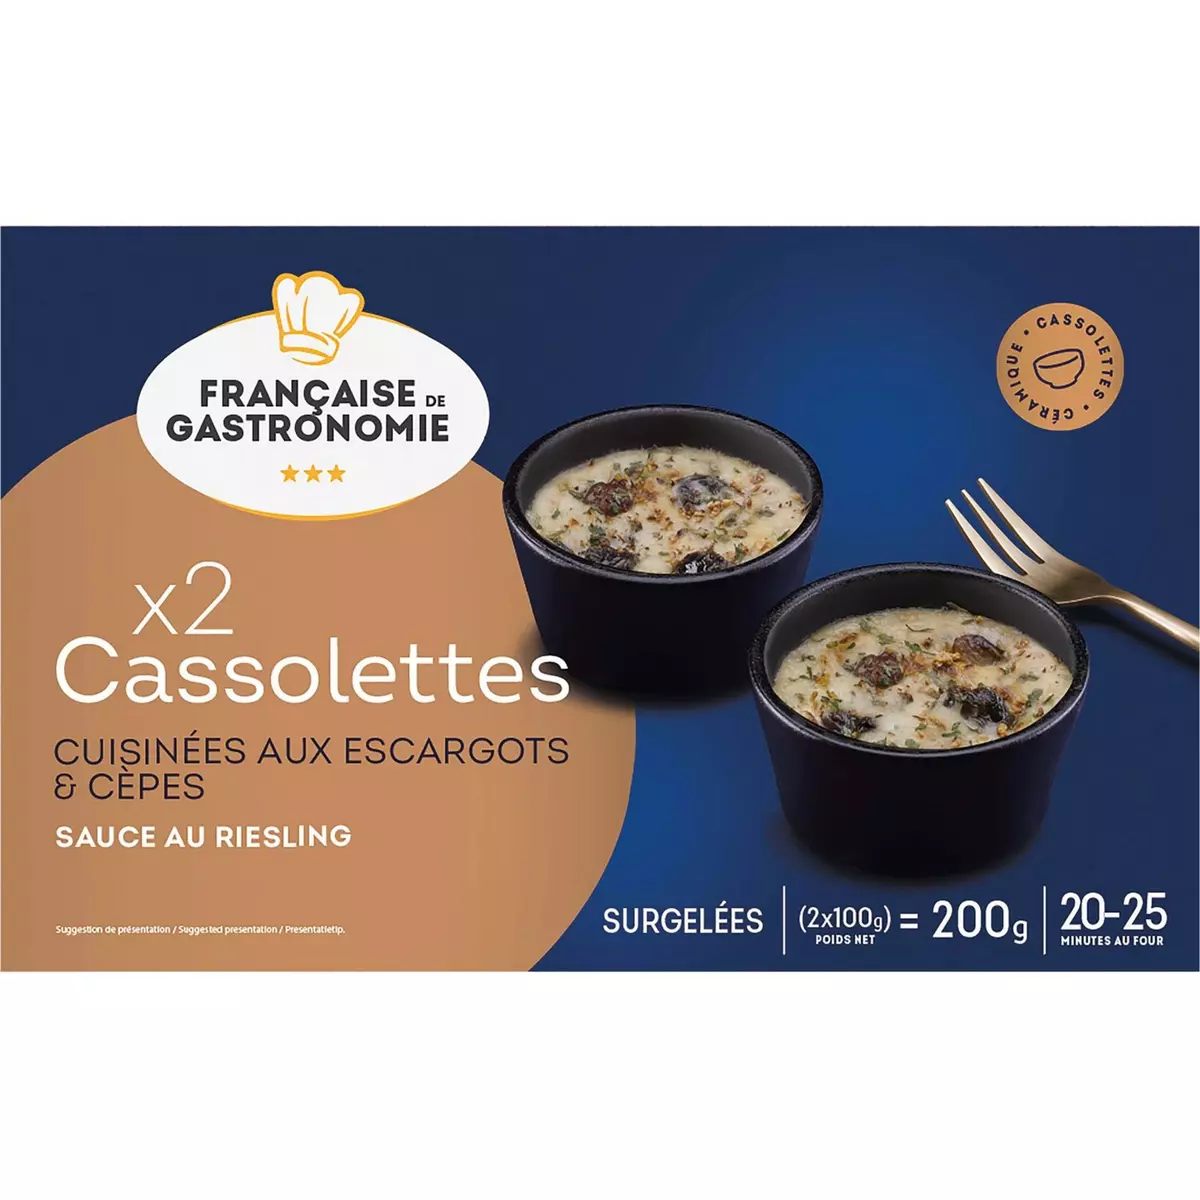 FRANCAISE DE GASTRONOMIE Cassolettes cuisinées aux escargots et cèpes sauce Riesling 2x100g